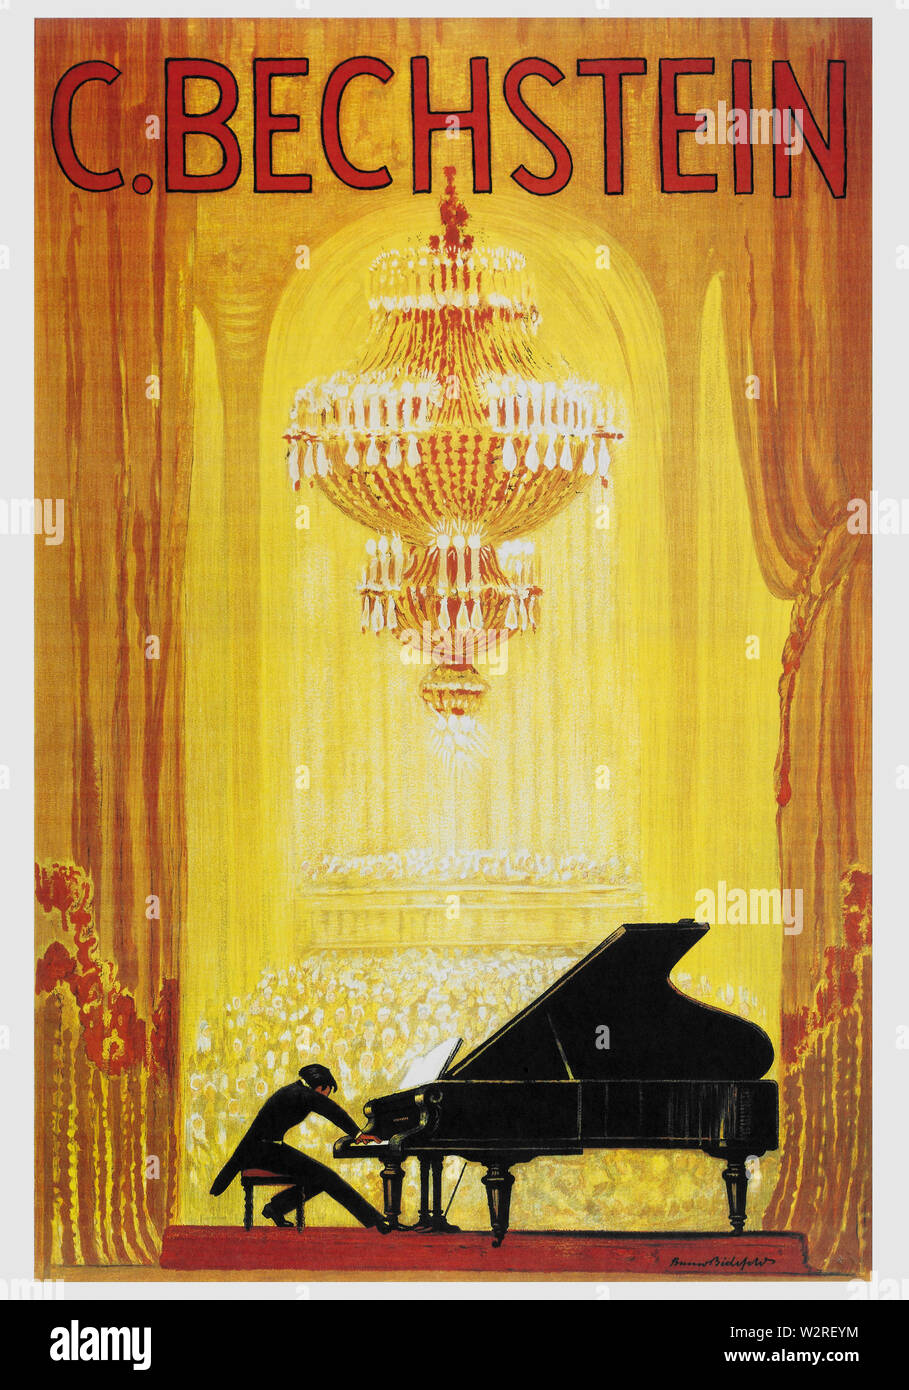 Werbung Plakat für die Deutschen Klavier Hersteller C. Bechstein  veröffentlicht um 1920. English: Werbeplakat für den deutschen  Klavierhersteller C. Bechstein, veröffentlicht um 1920 Stockfotografie -  Alamy